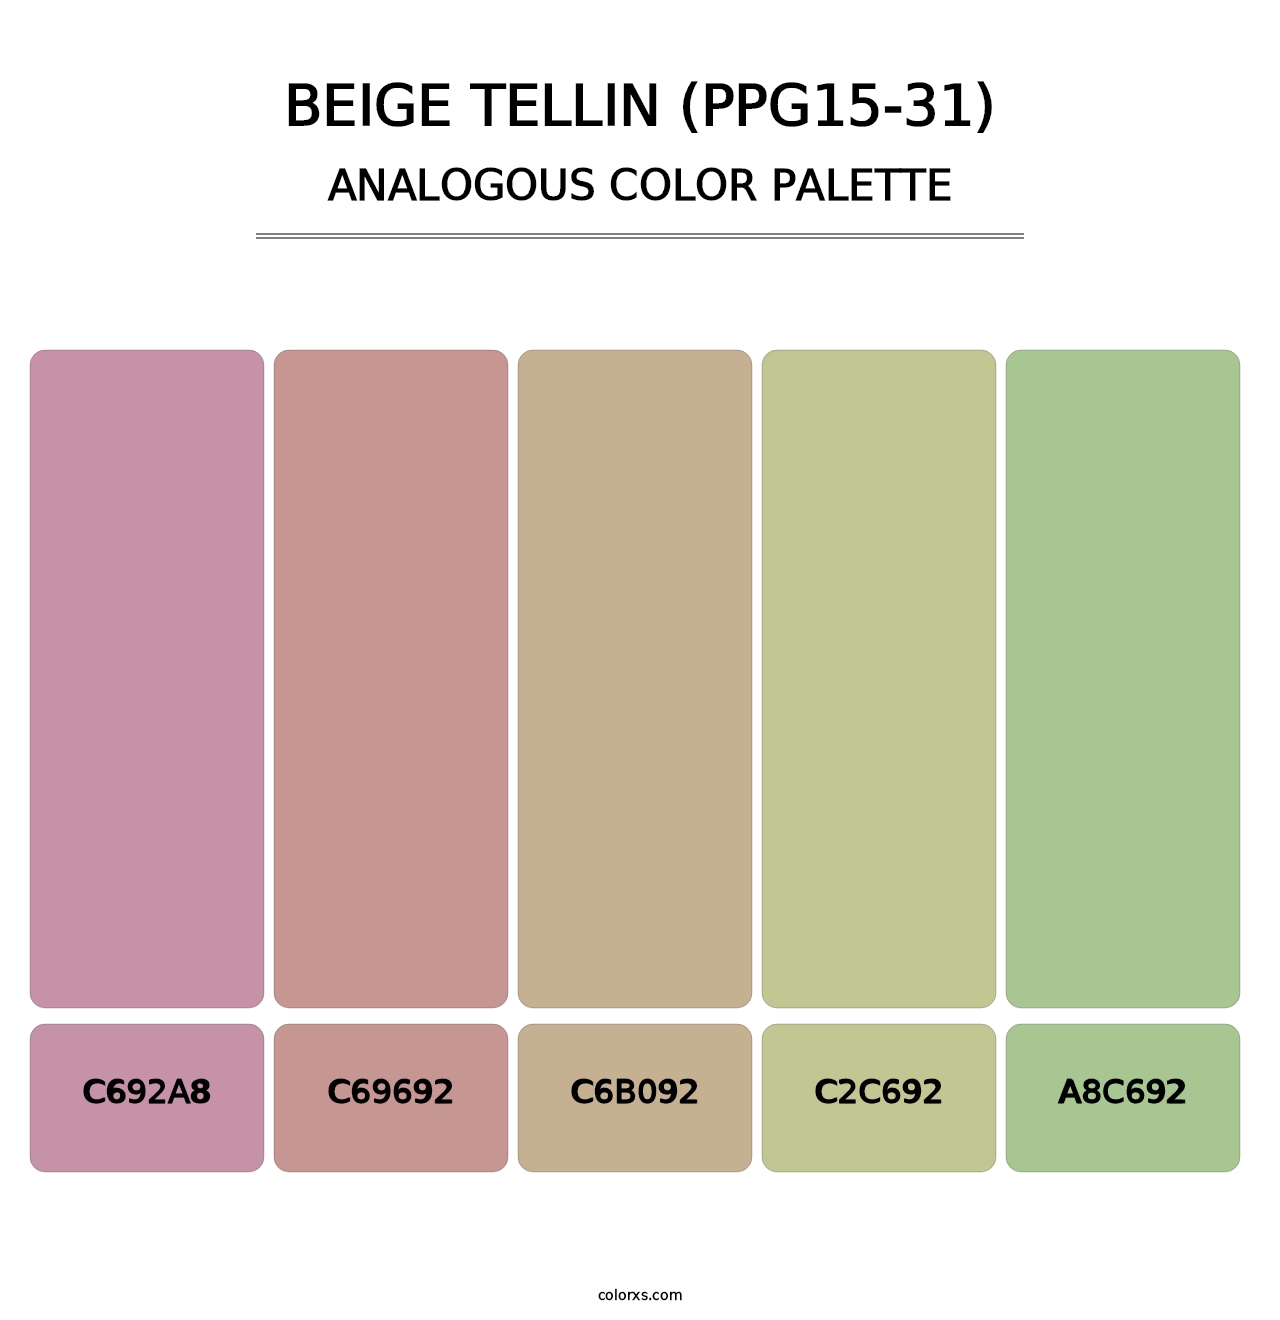 Beige Tellin (PPG15-31) - Analogous Color Palette